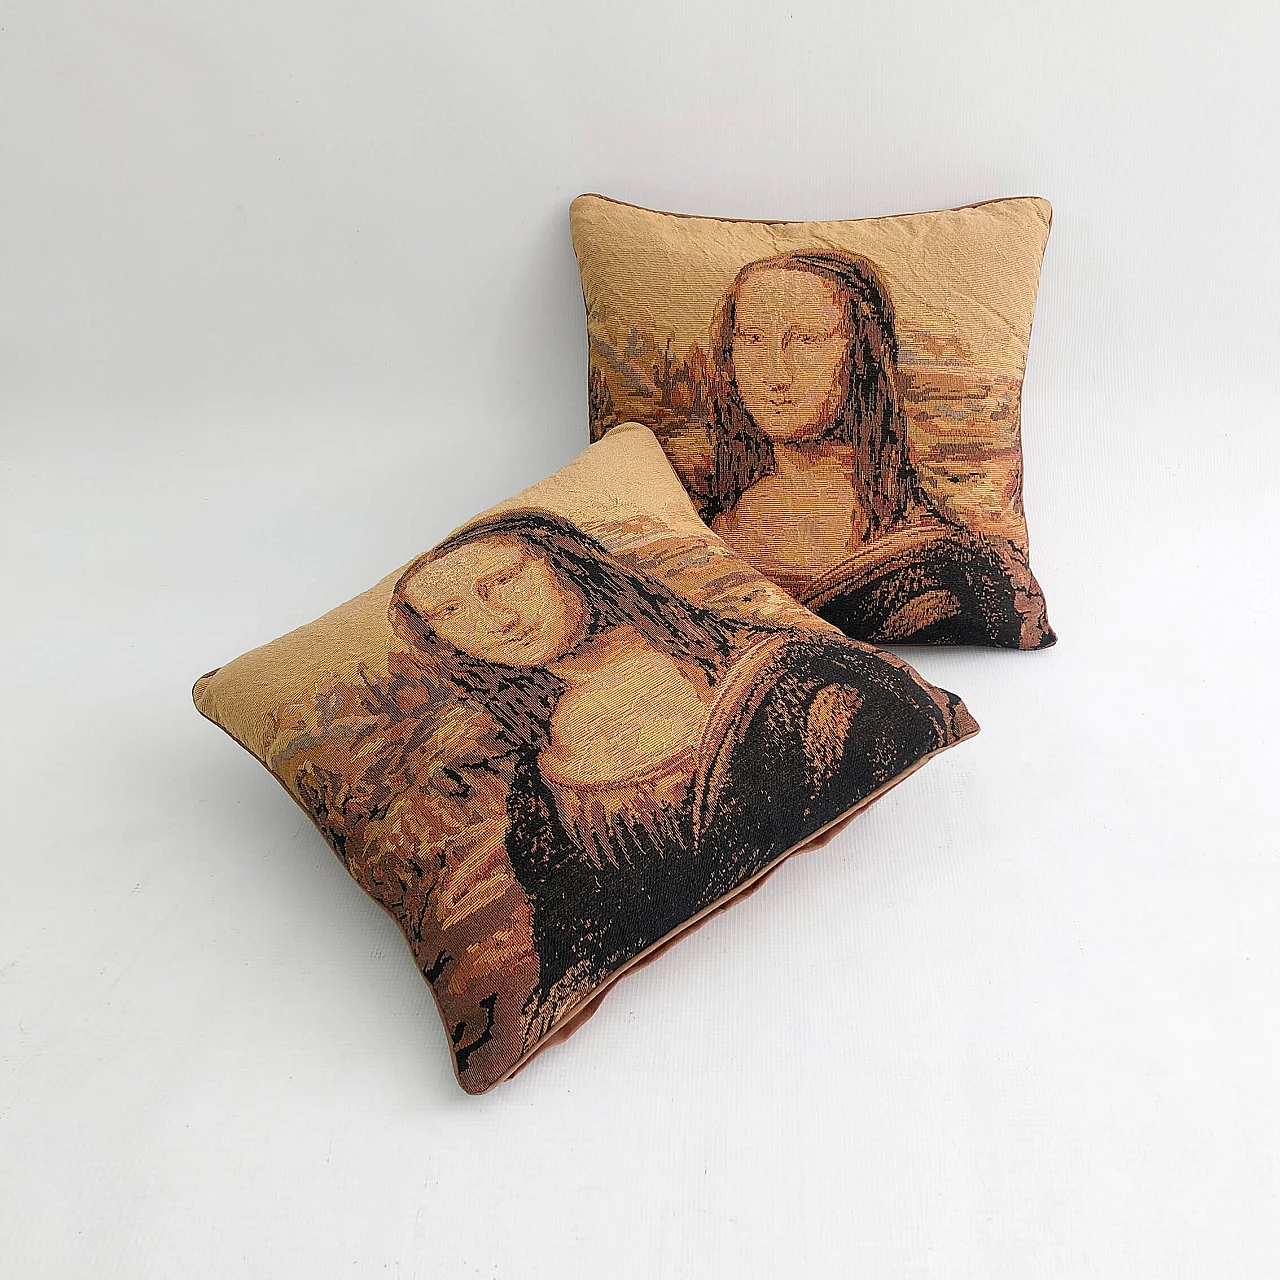 Mona Lisa souvenir cushion, 1970s 1323847